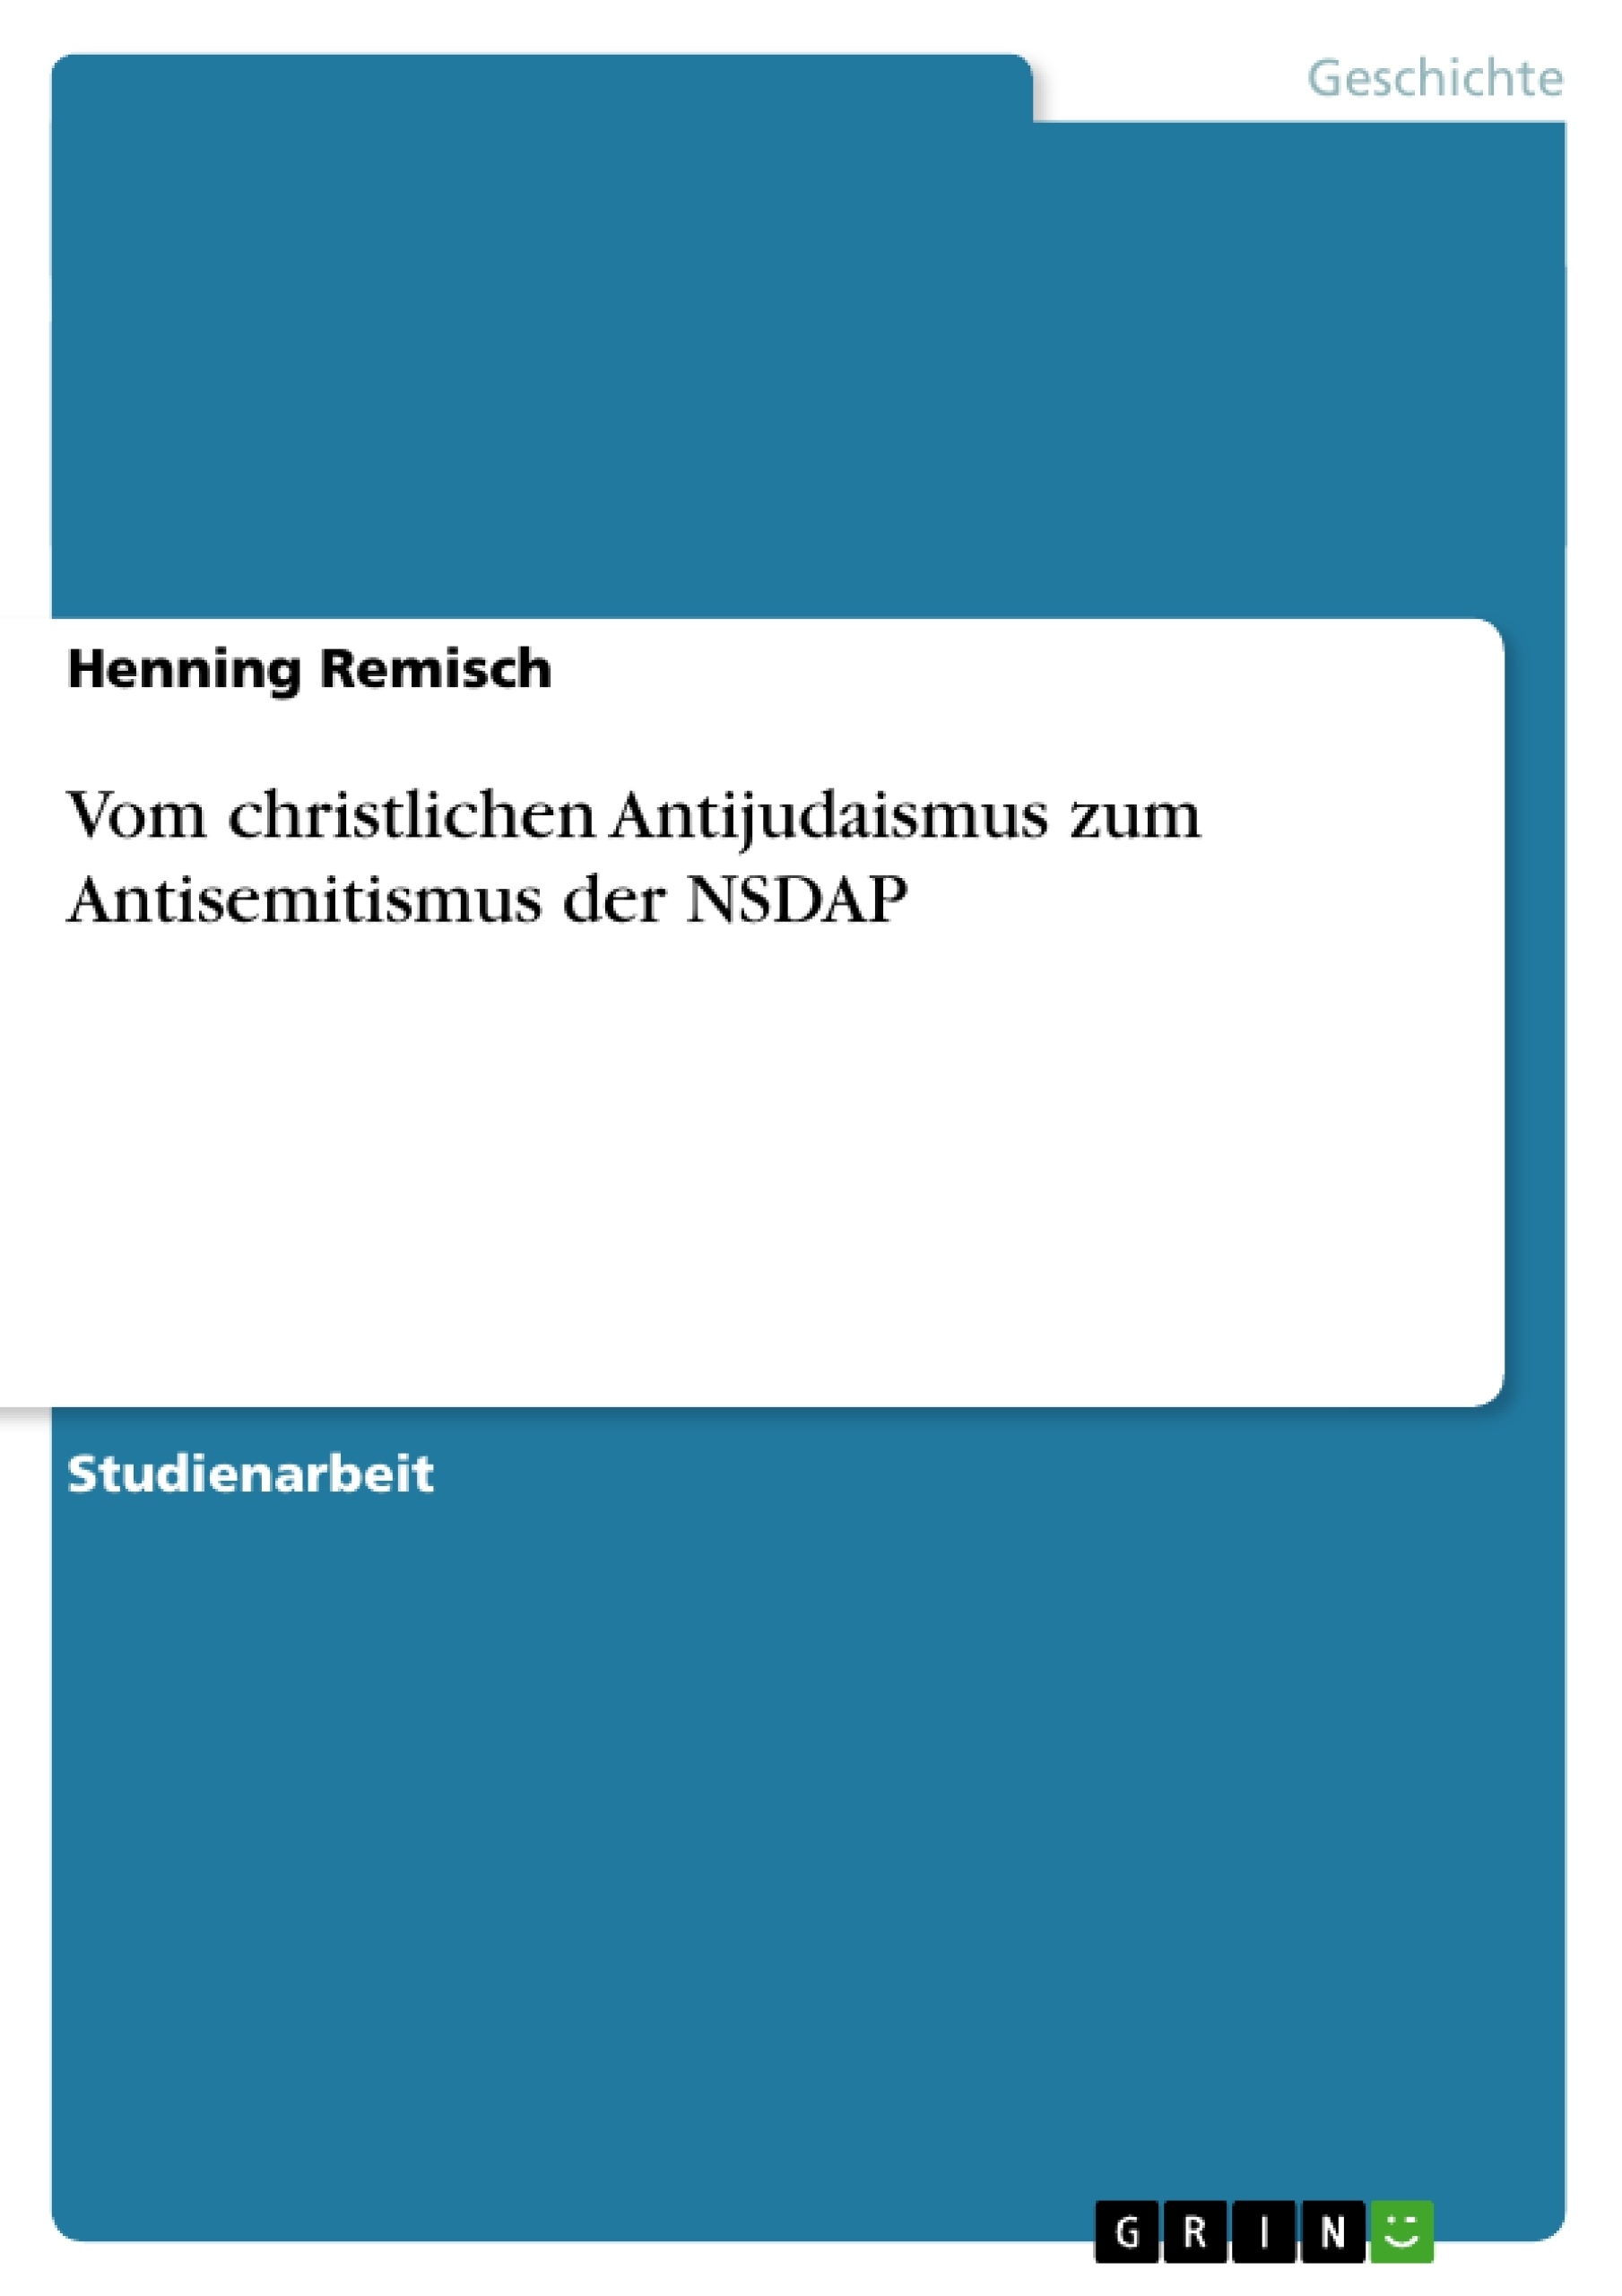 Titre: Vom christlichen Antijudaismus zum Antisemitismus der NSDAP